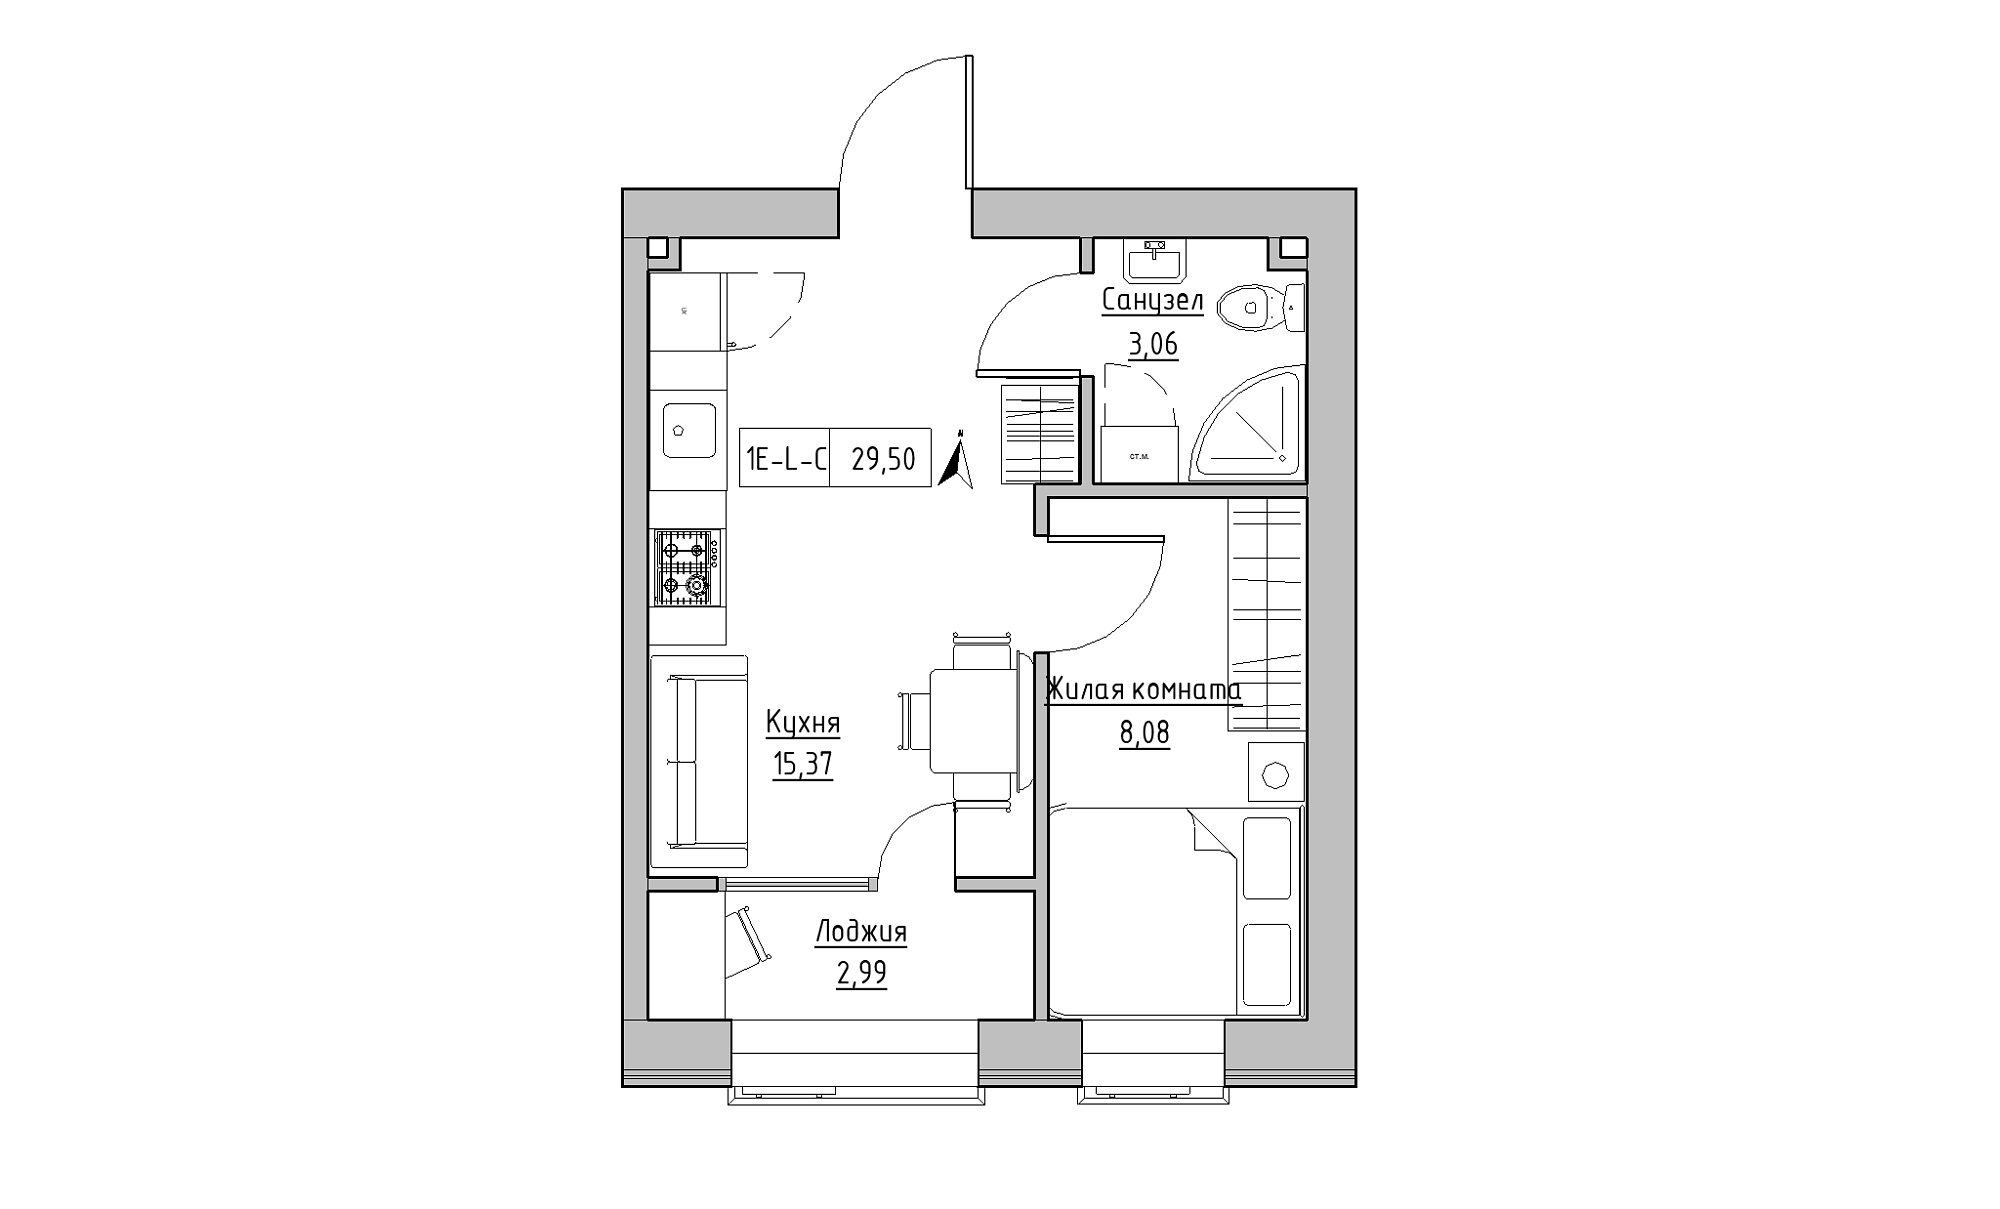 Планування 1-к квартира площею 29.5м2, KS-016-02/0006.